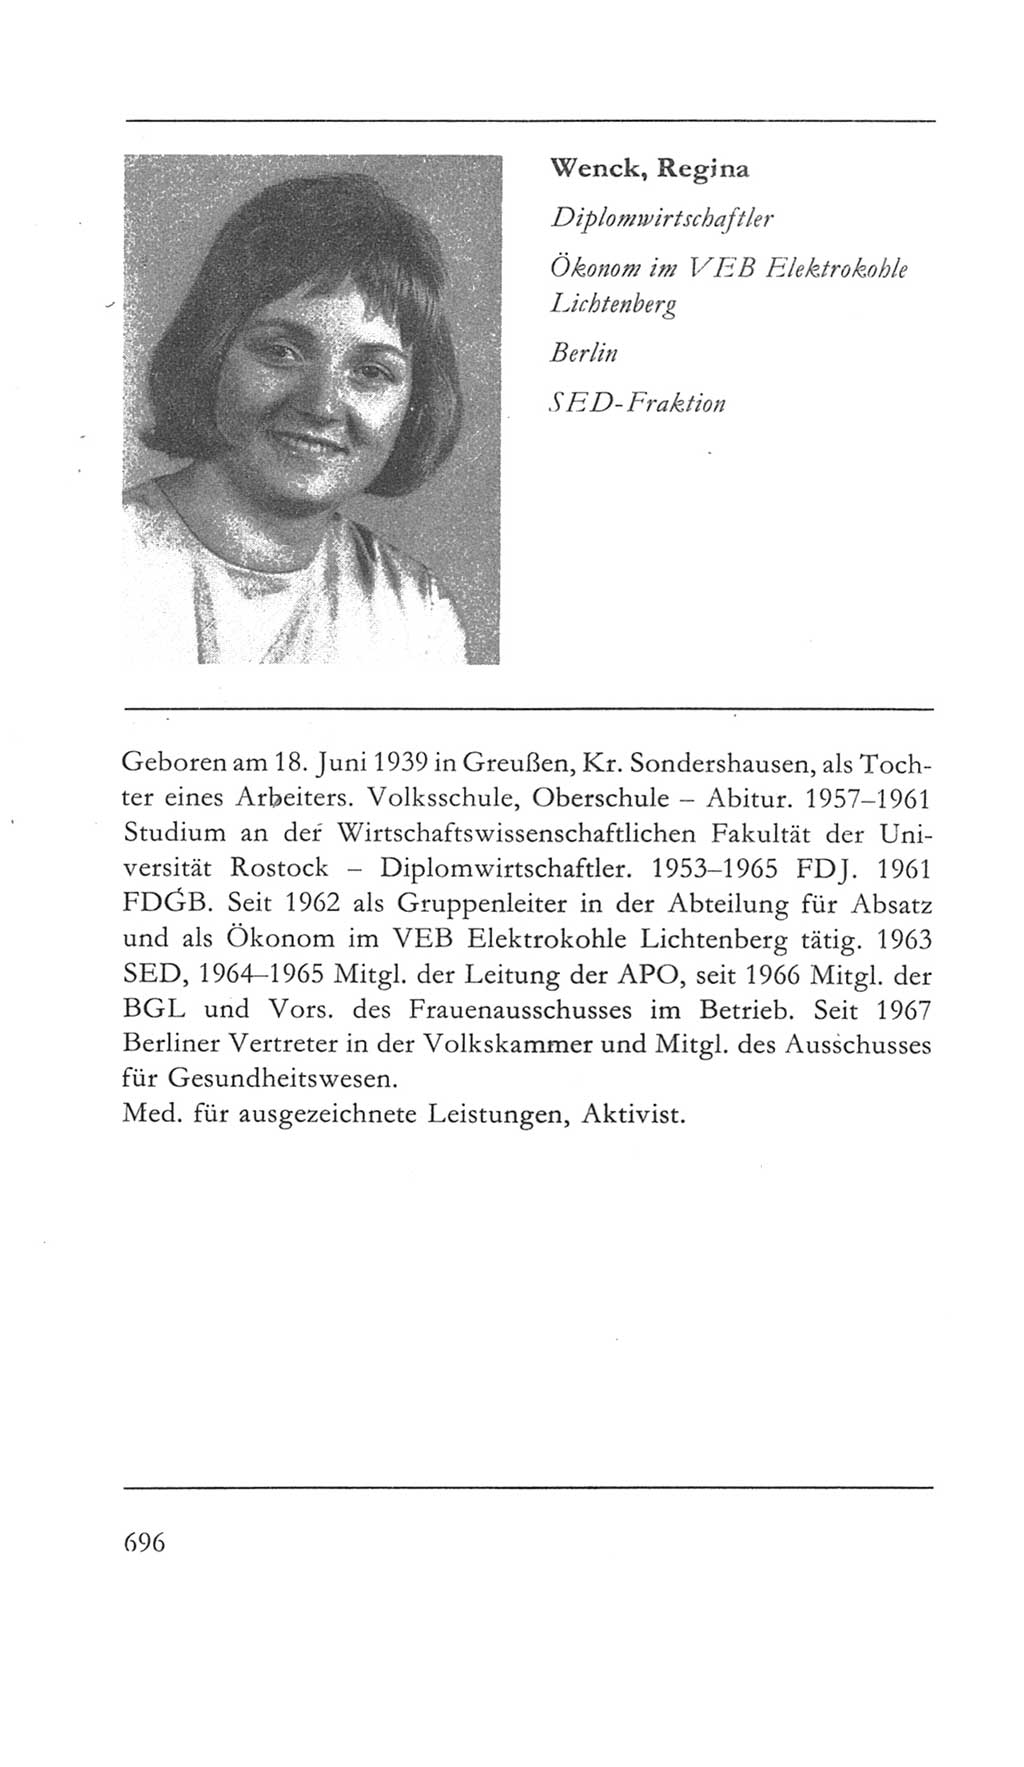 Volkskammer (VK) der Deutschen Demokratischen Republik (DDR) 5. Wahlperiode 1967-1971, Seite 696 (VK. DDR 5. WP. 1967-1971, S. 696)